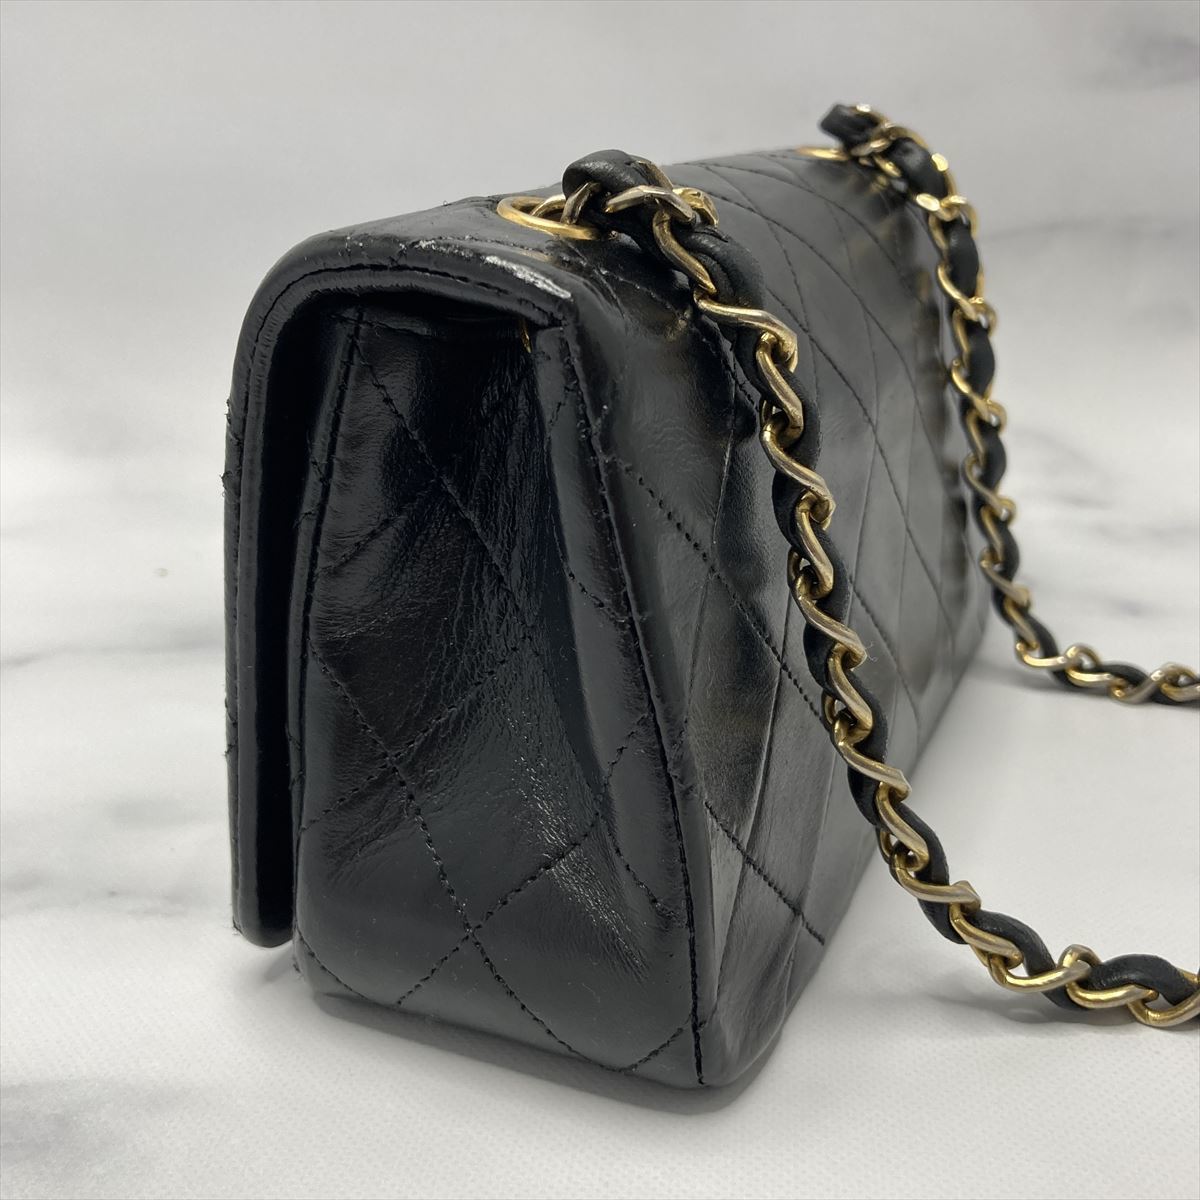 シャネル マトラッセ チェーン ショルダーバッグ 黒 ブラック CHANEL MATELASSE Chain Shoulder Bag Black_画像3